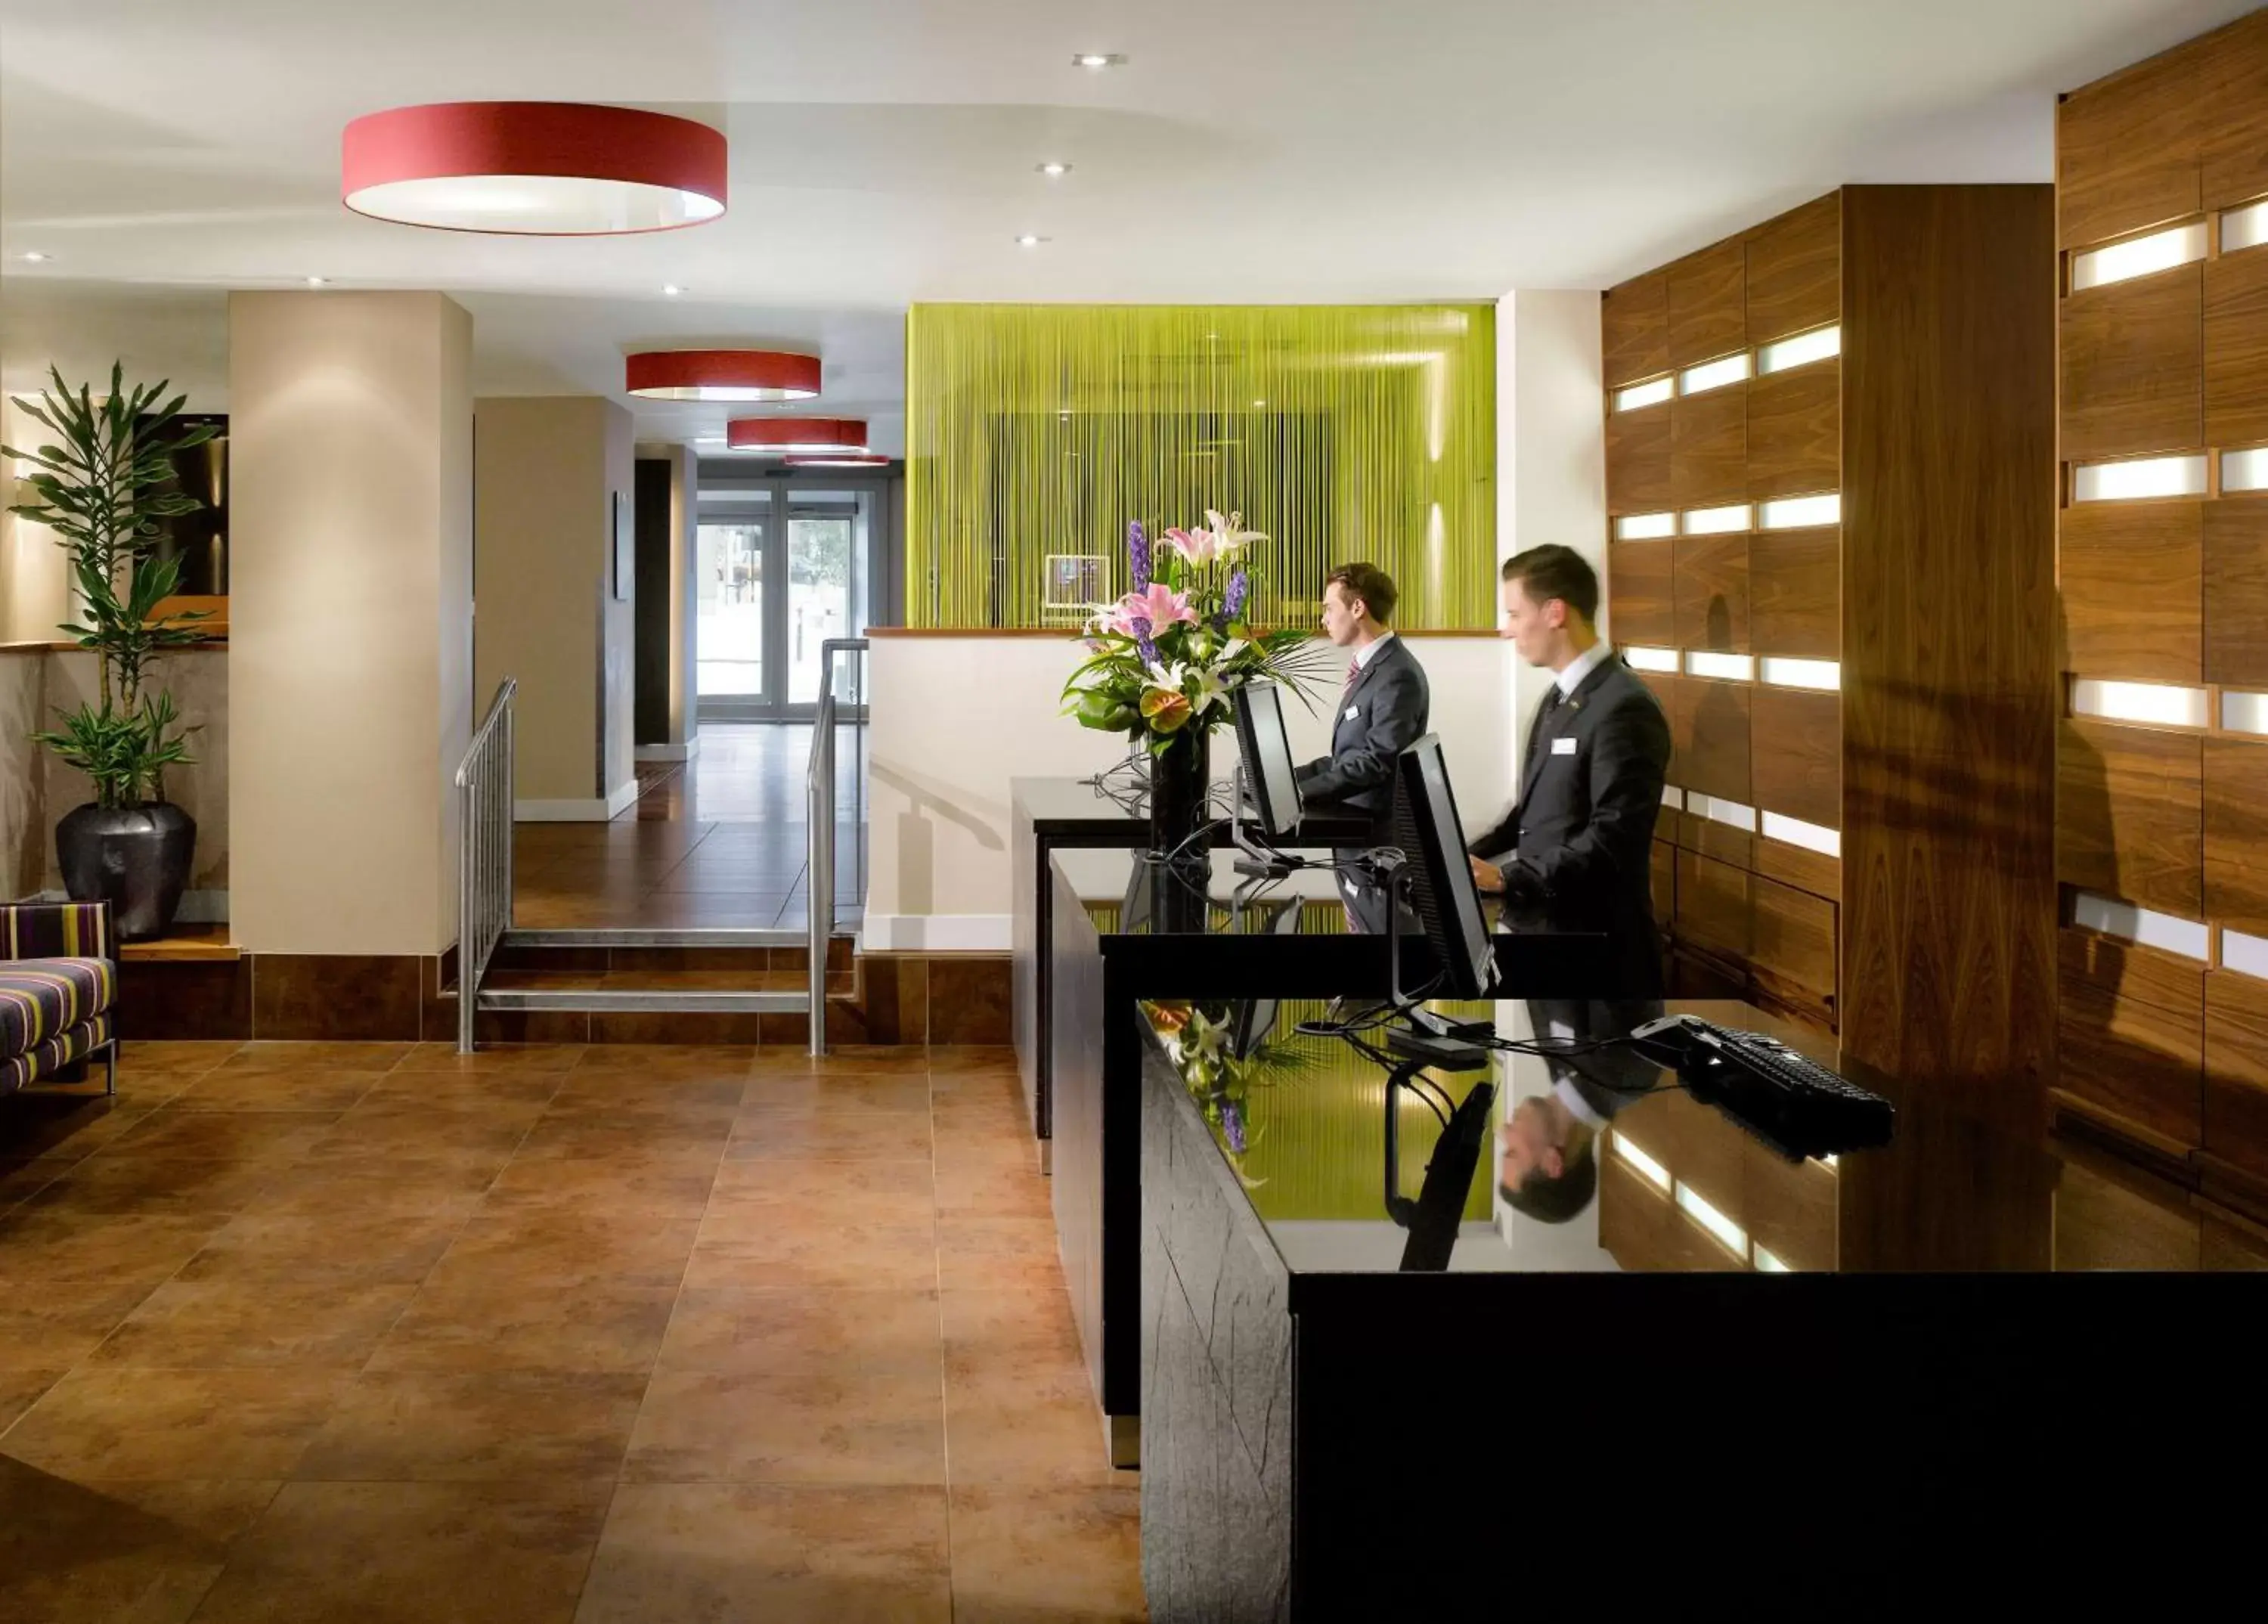 Lobby or reception in Radisson Blu Hotel, Bristol